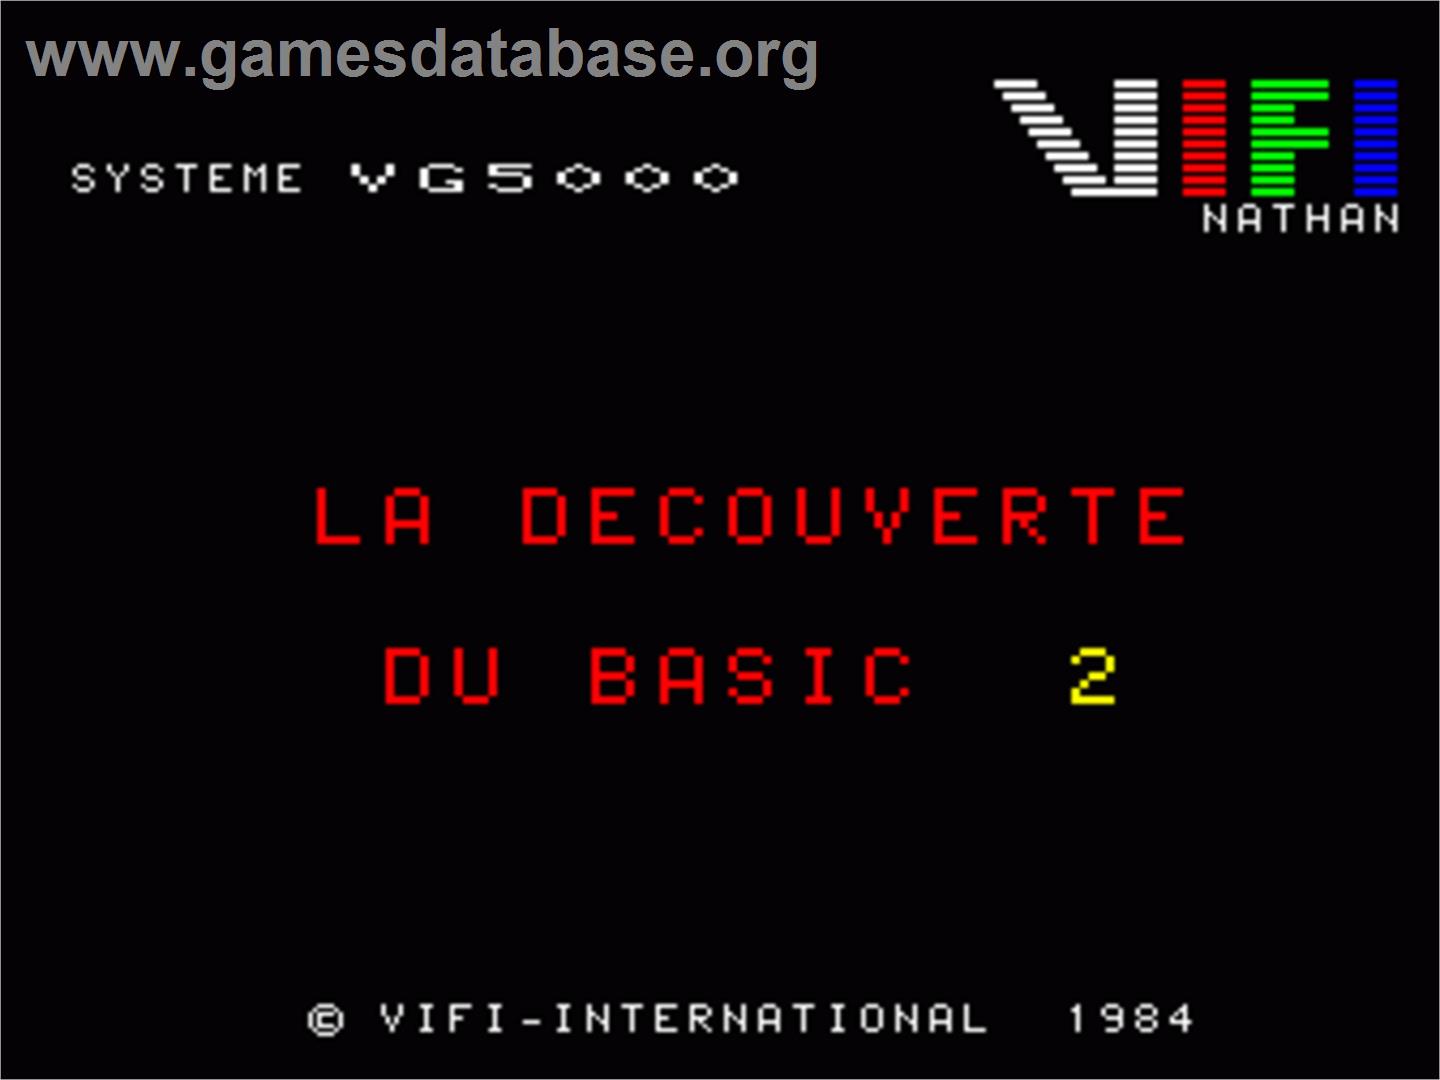 Decouverte Du Basic - Volume 2 - Philips VG 5000 - Artwork - Title Screen